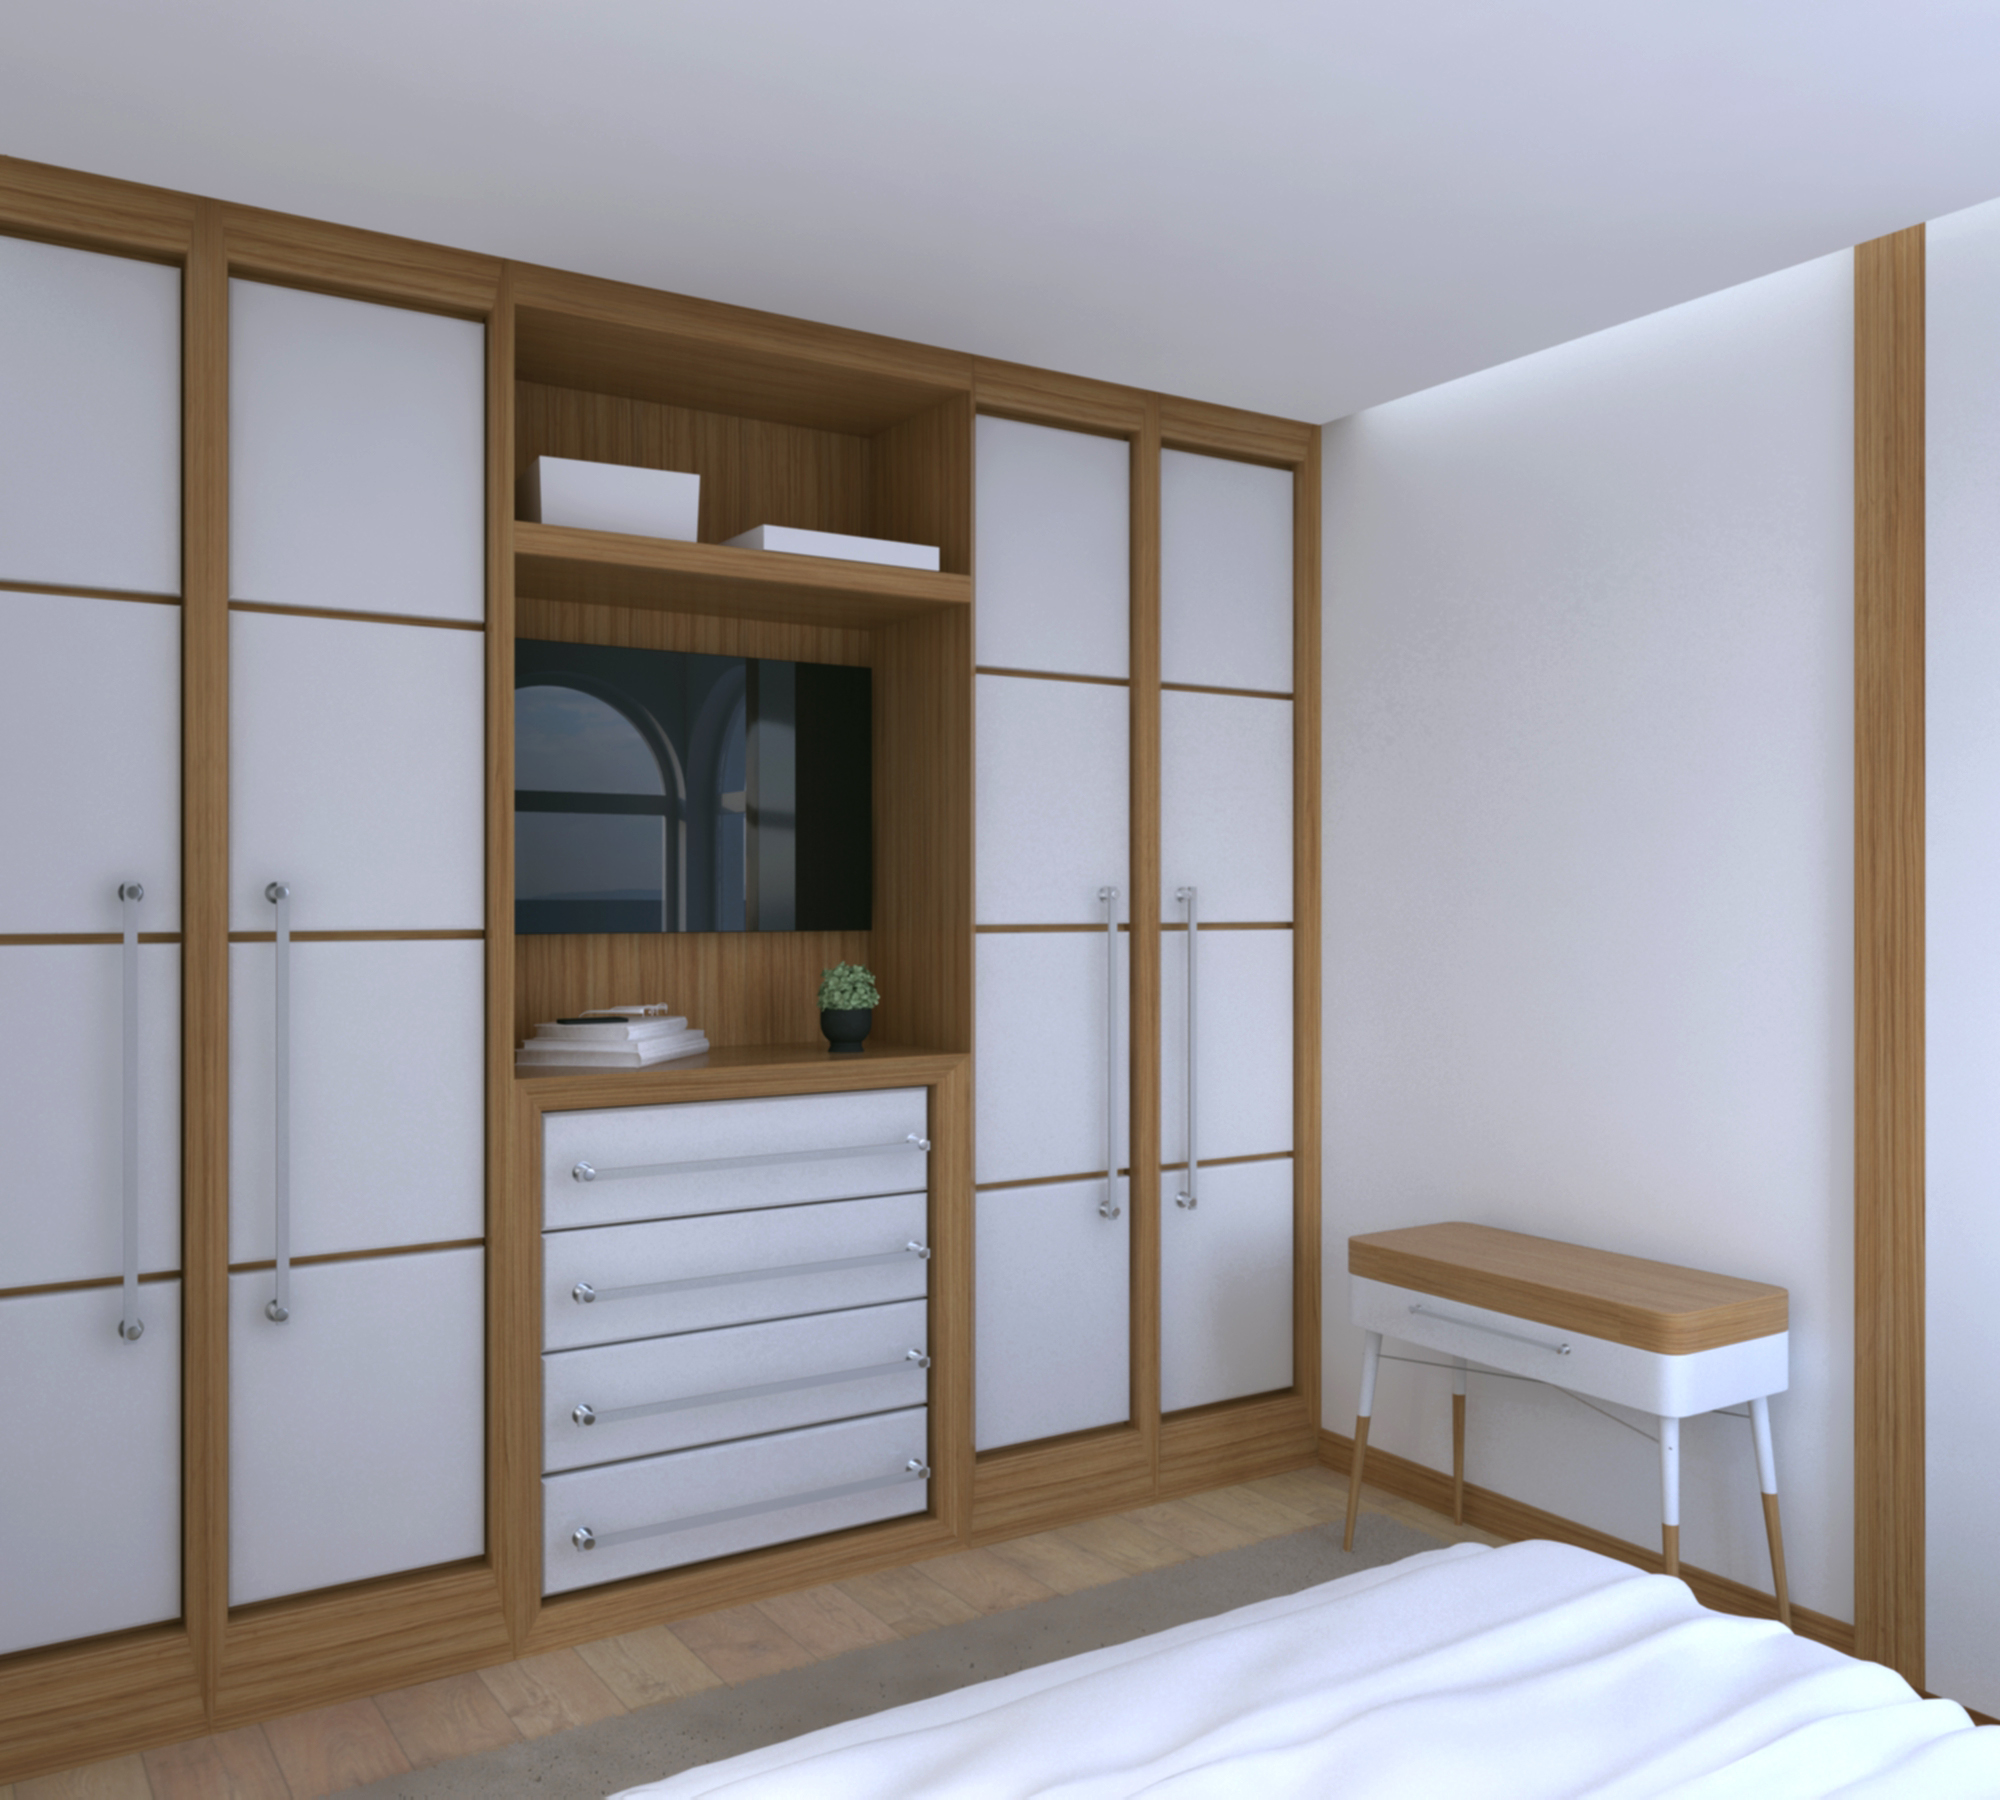 design-interiores-algarve-casa-banho-moderna-branco-3d